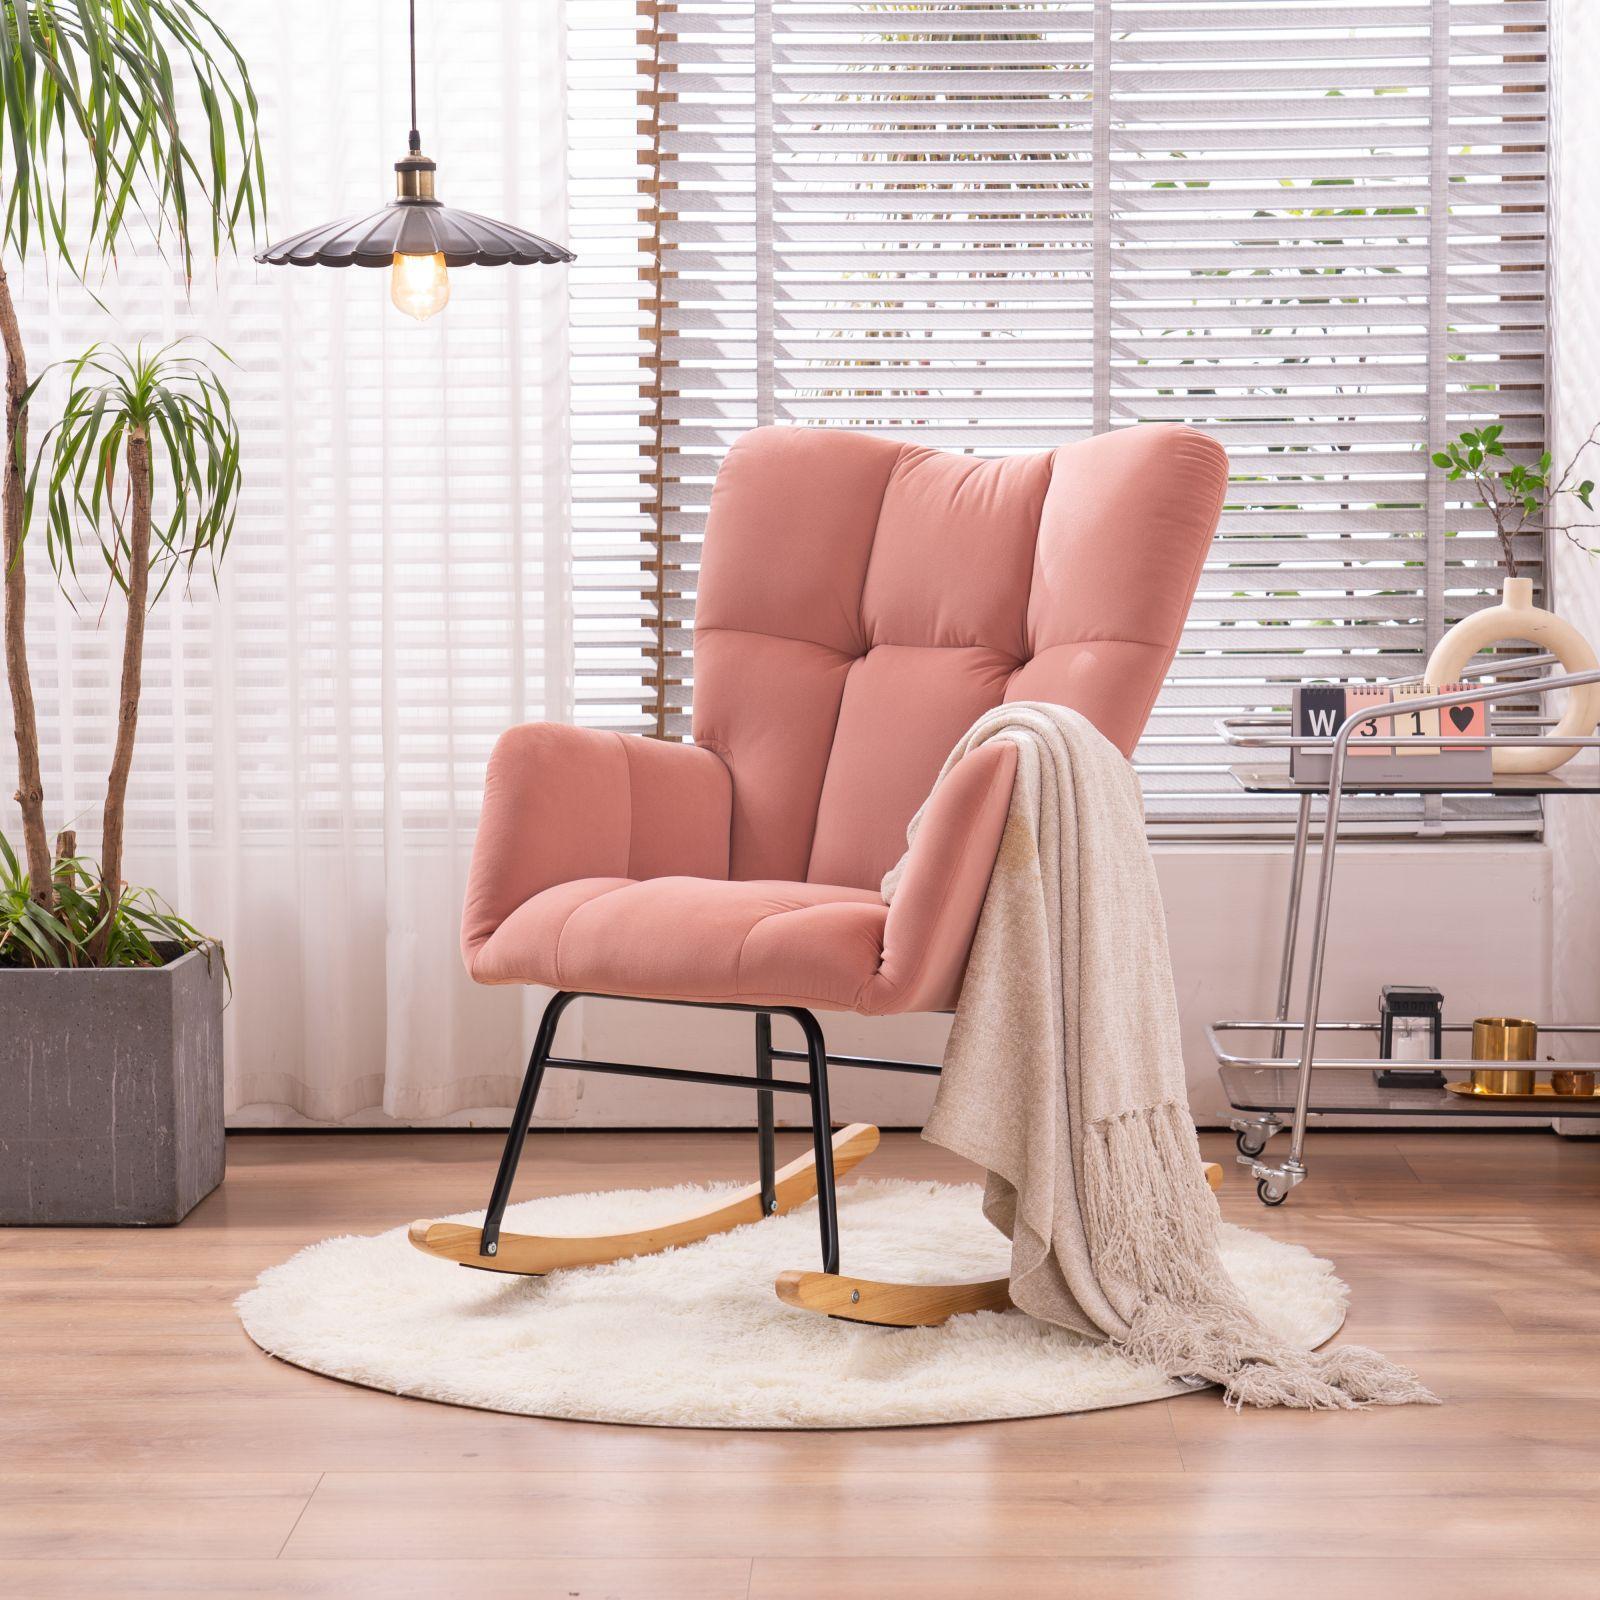 Mid Century Modern Velvet Tufted Upholstered Rocking Chair Padded Seat for Living Room Bedroom, PINK-Boyel Living